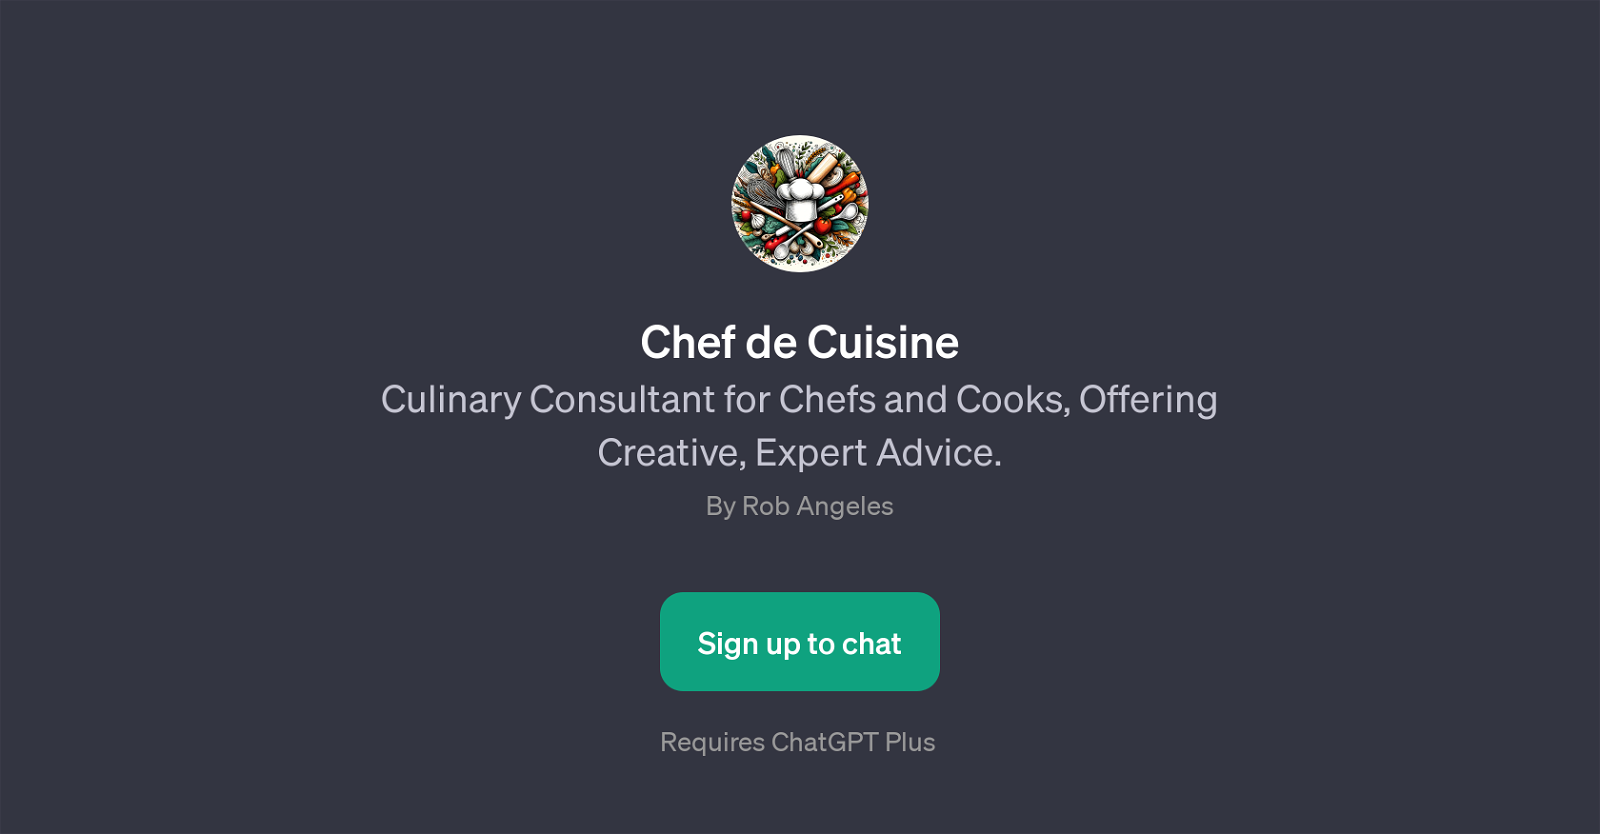 Chef de Cuisine website